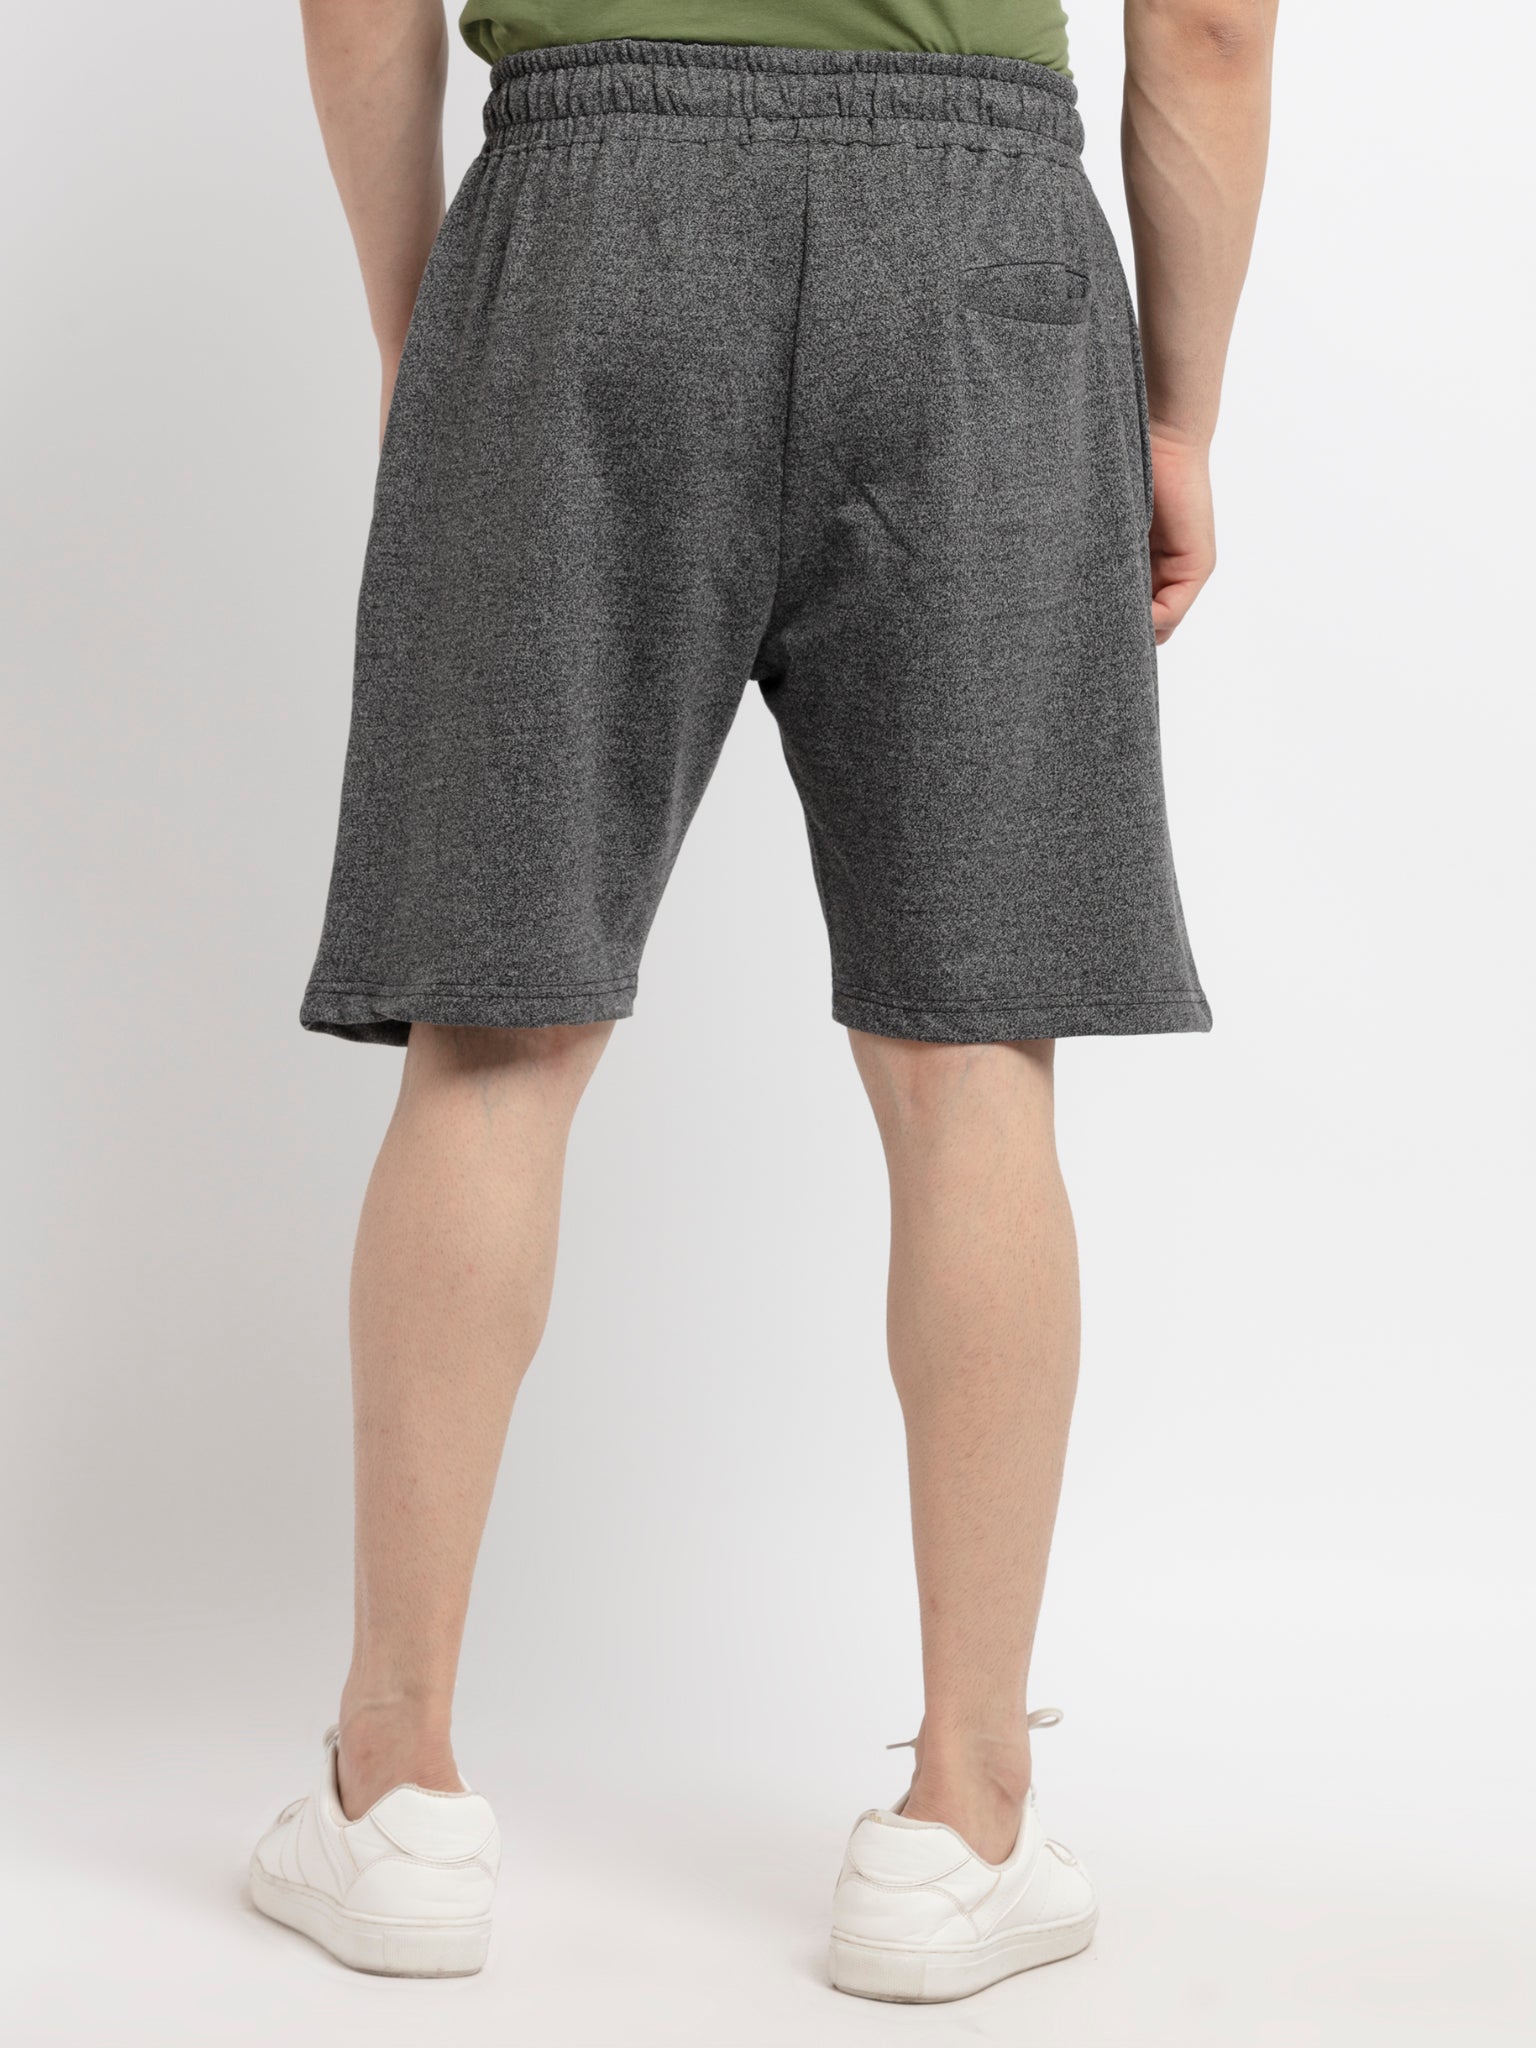 Mens Printed Shorts